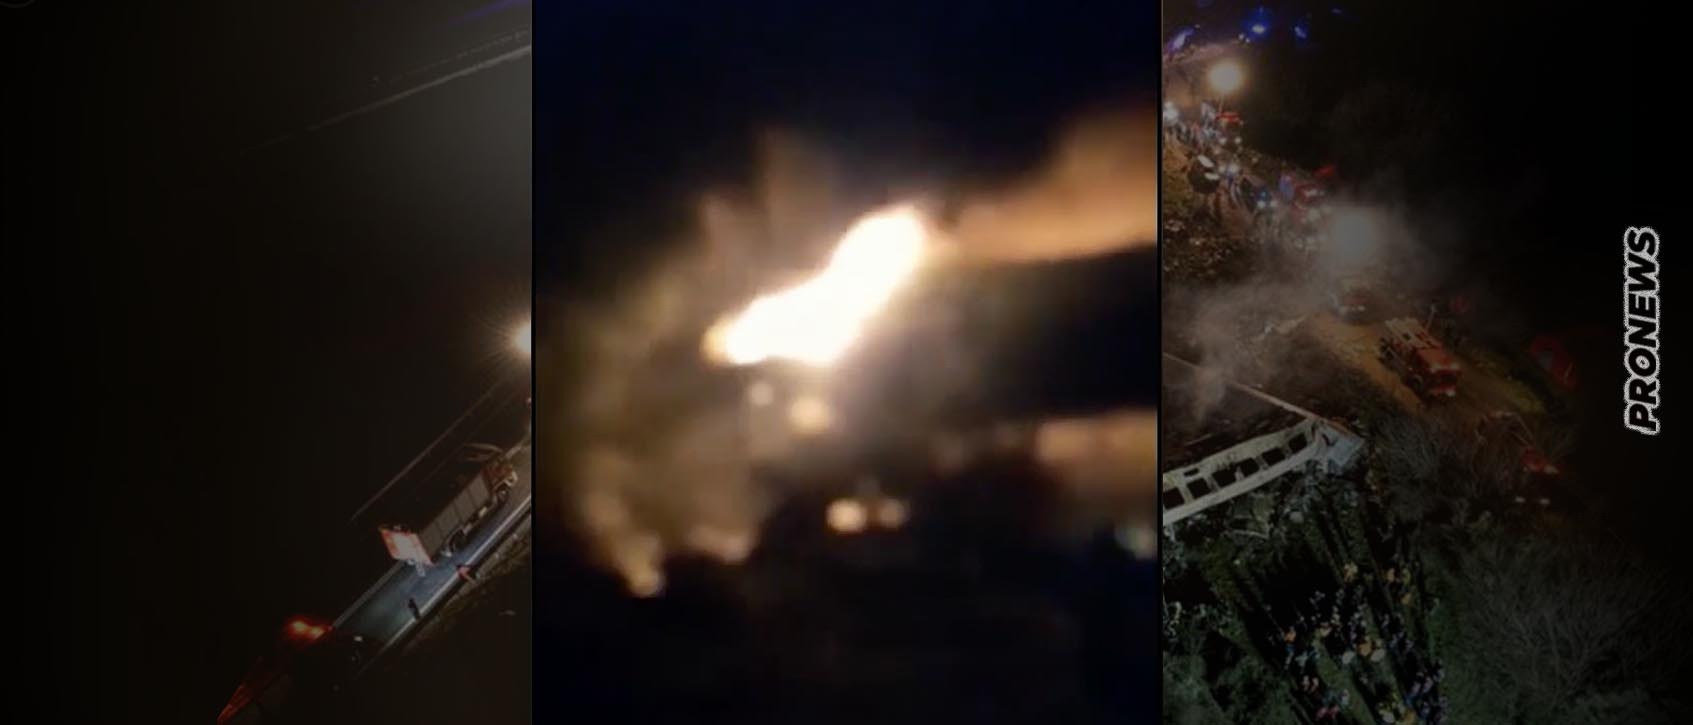 Έγκλημα στα Τέμπη: Νέο σοκαριστικό βίντεο από τα φλεγόμενα πρώτα βαγόνια – Ακούγονται τα ουρλιαχτά των ανθρώπων που καίγονται